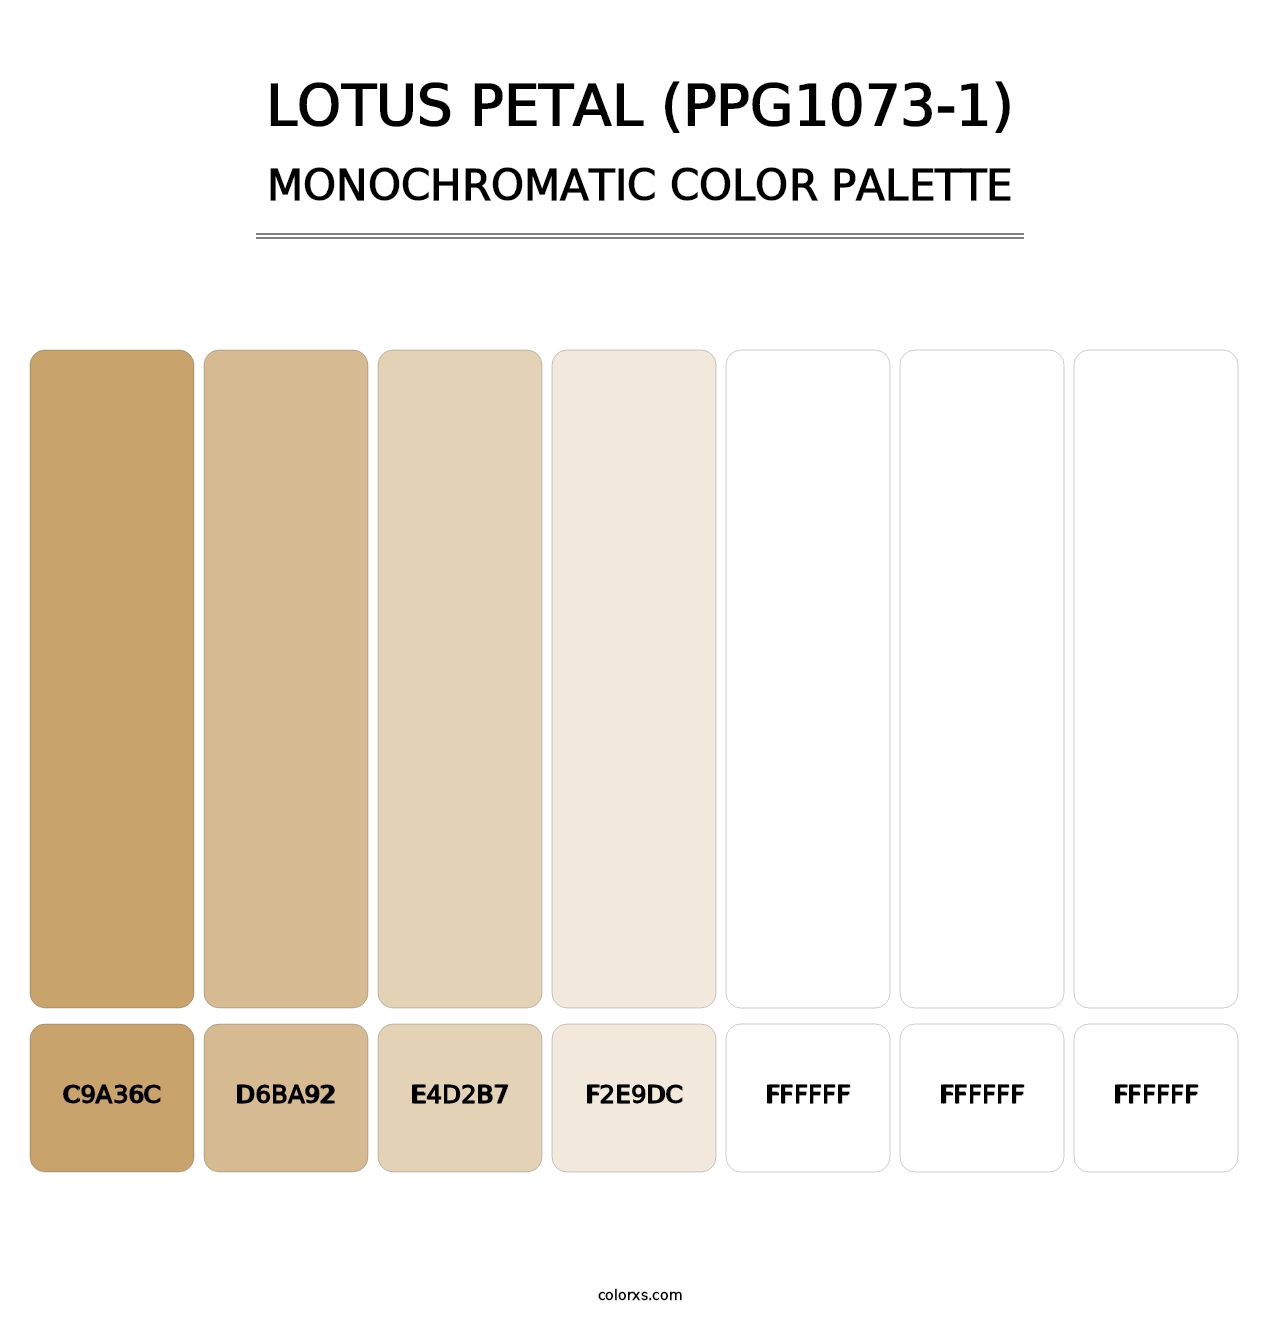 Lotus Petal (PPG1073-1) - Monochromatic Color Palette